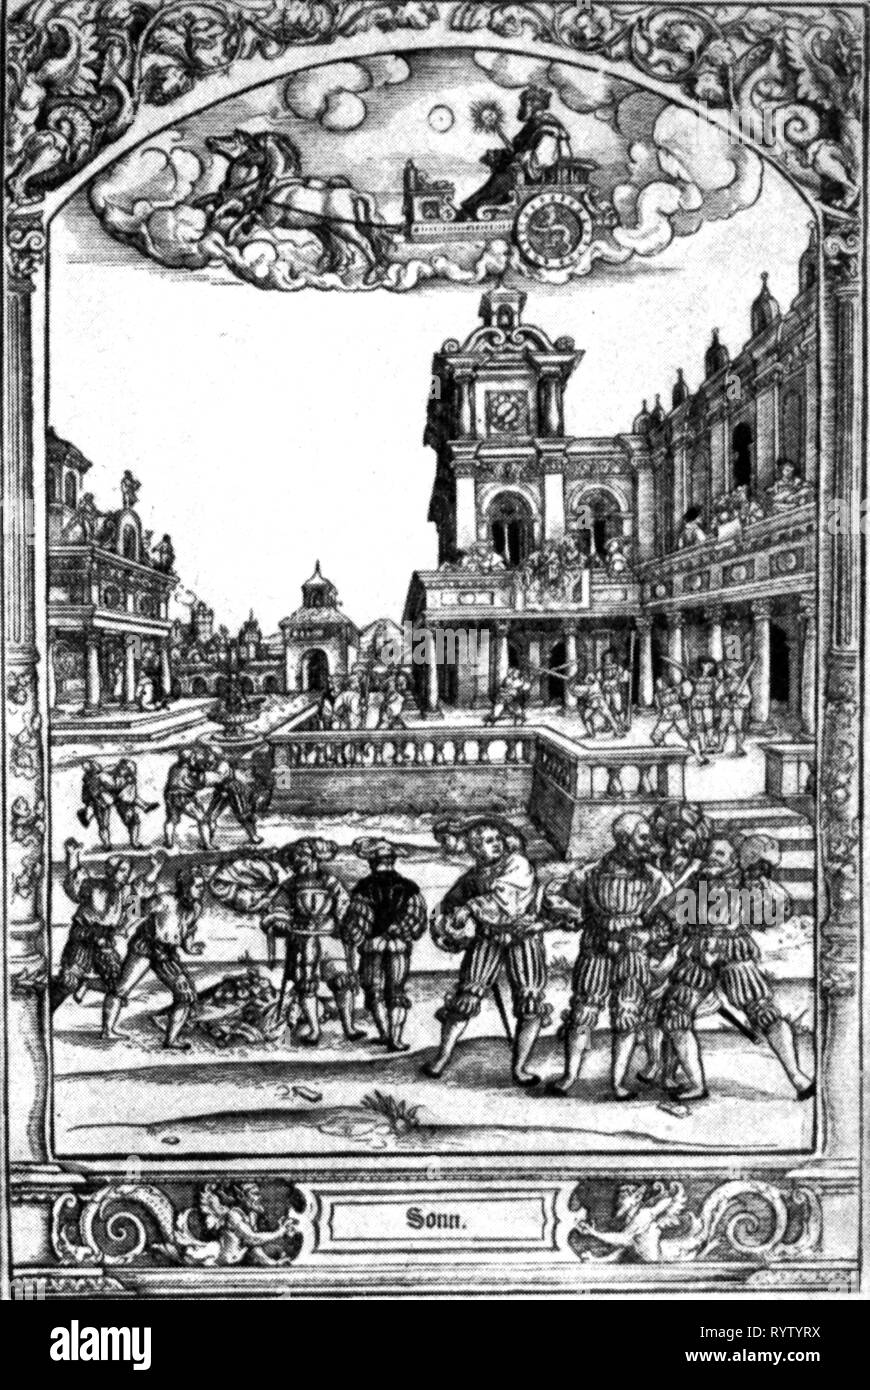 L'astronomie, allégories, sun, sun dieu dans le char au-dessus de la cour intérieure avec guerrier pendant un entraînement aux armes, gravure sur cuivre, par Hans Sebald Beham (1500 - 1550), 1530 - 1540, l'artiste n'a pas d'auteur pour être effacé Banque D'Images